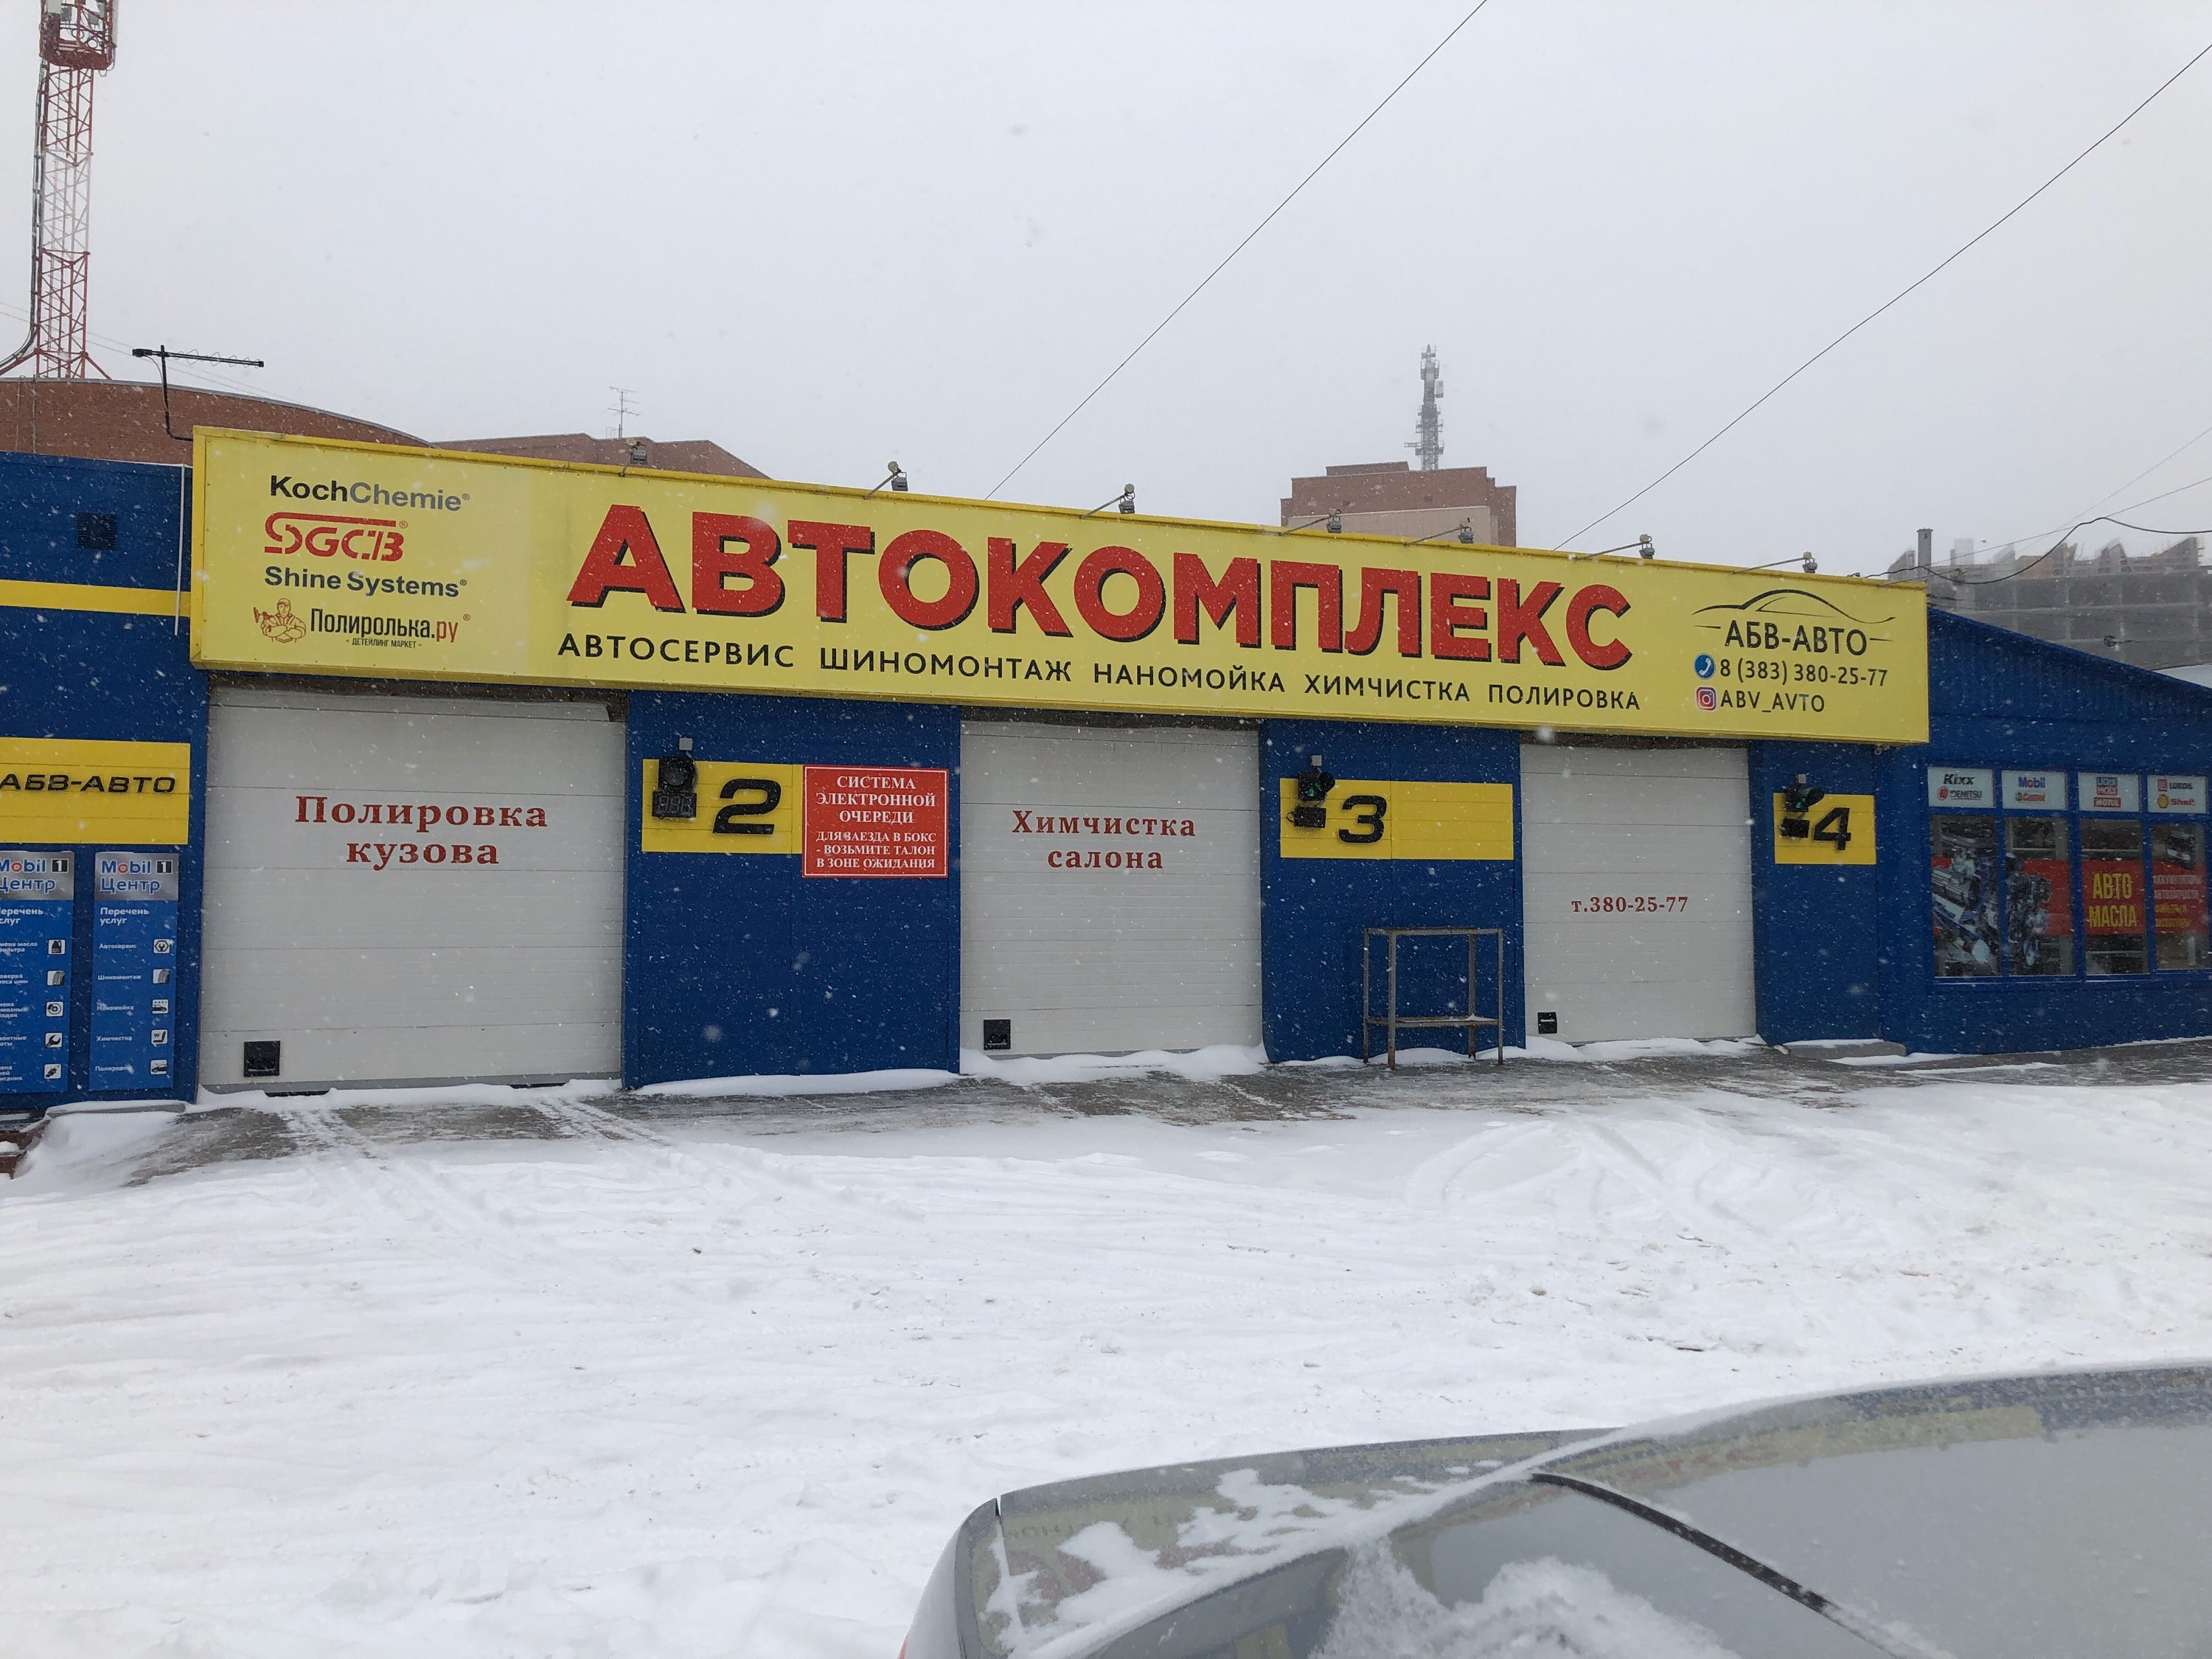 АБВ-Авто, автокомплекс в Новосибирске - отзыв и оценка - Ale